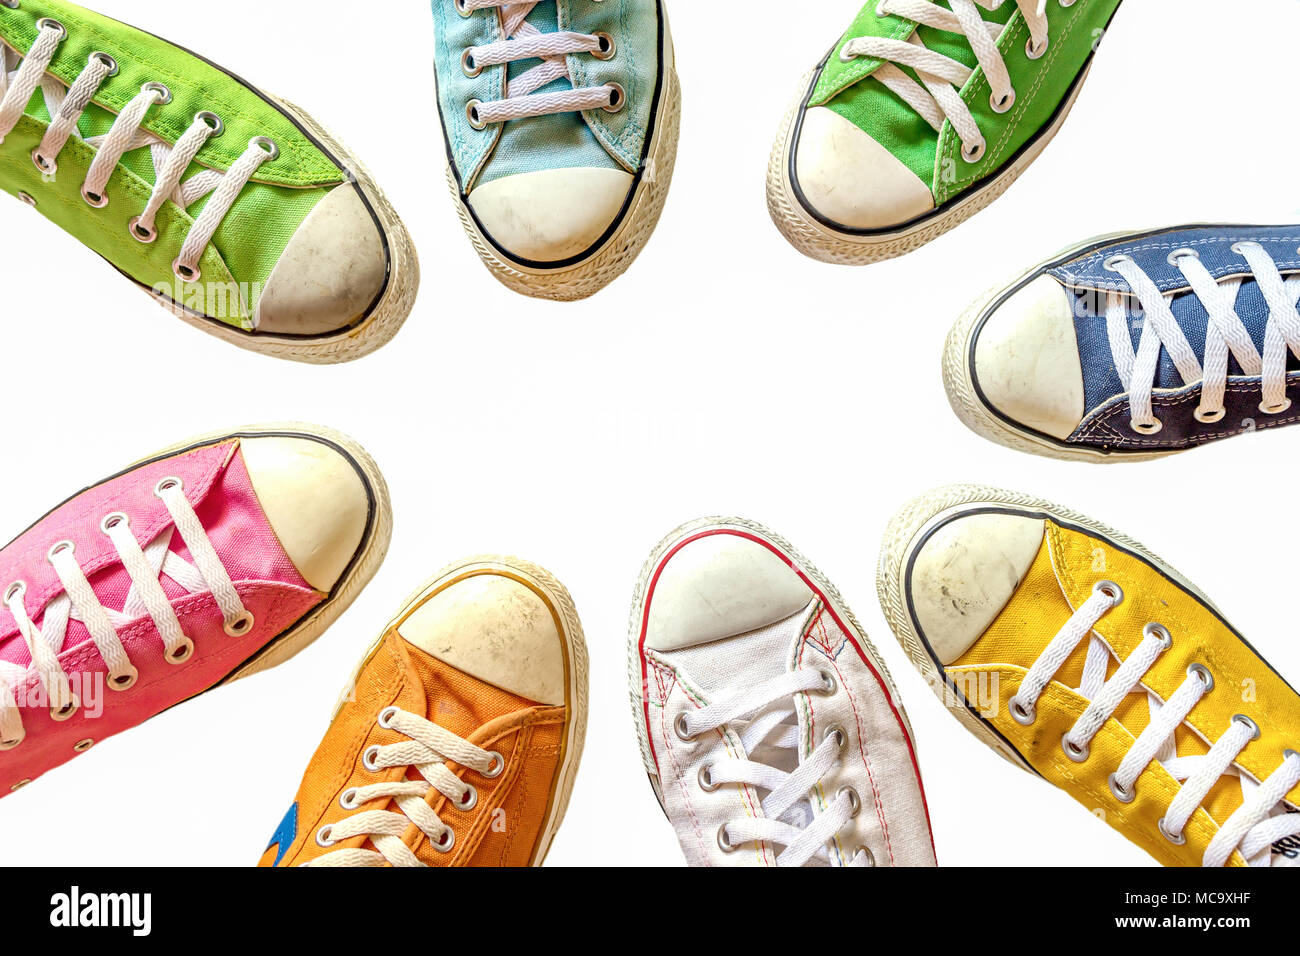 Vielfalt der bunten Leder Schuhe auf einem weißen Hintergrund. Sneaker  Schuhe auf, kühlen Jugend weiß gelb blau schwarz Turnschuhe im Kreis  stehend auf wh Stockfotografie - Alamy